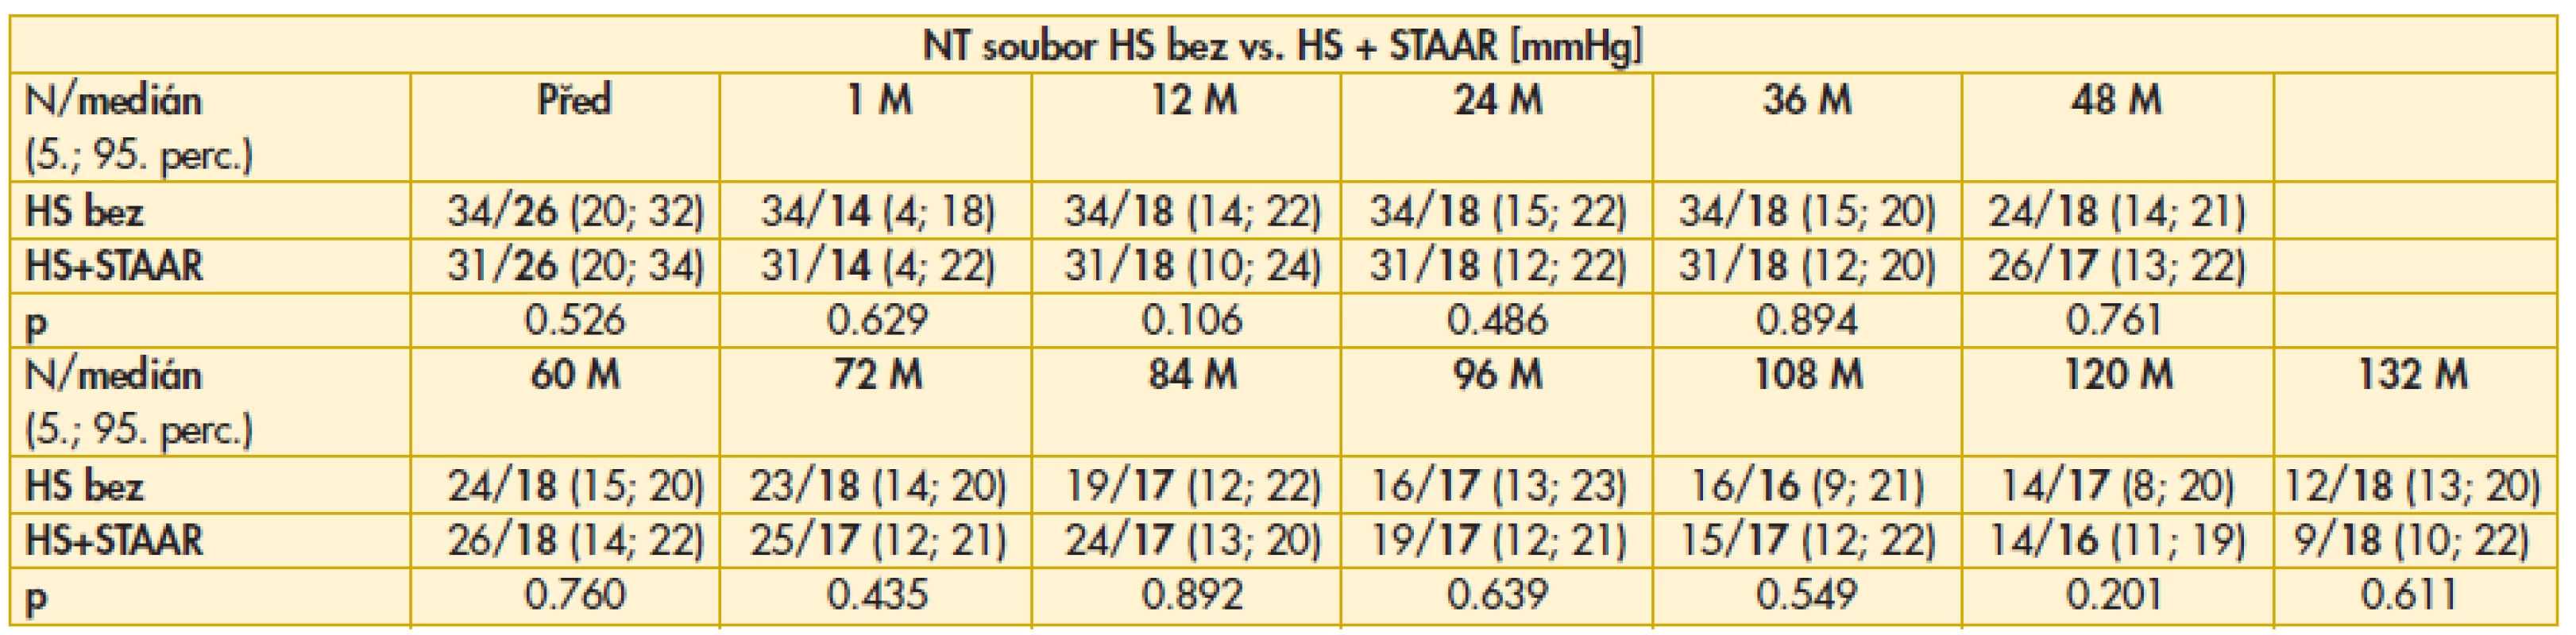 Výsledky srovnání hodnot NT mezi soubory HS bez vs. HS+STAAR před a po operaci